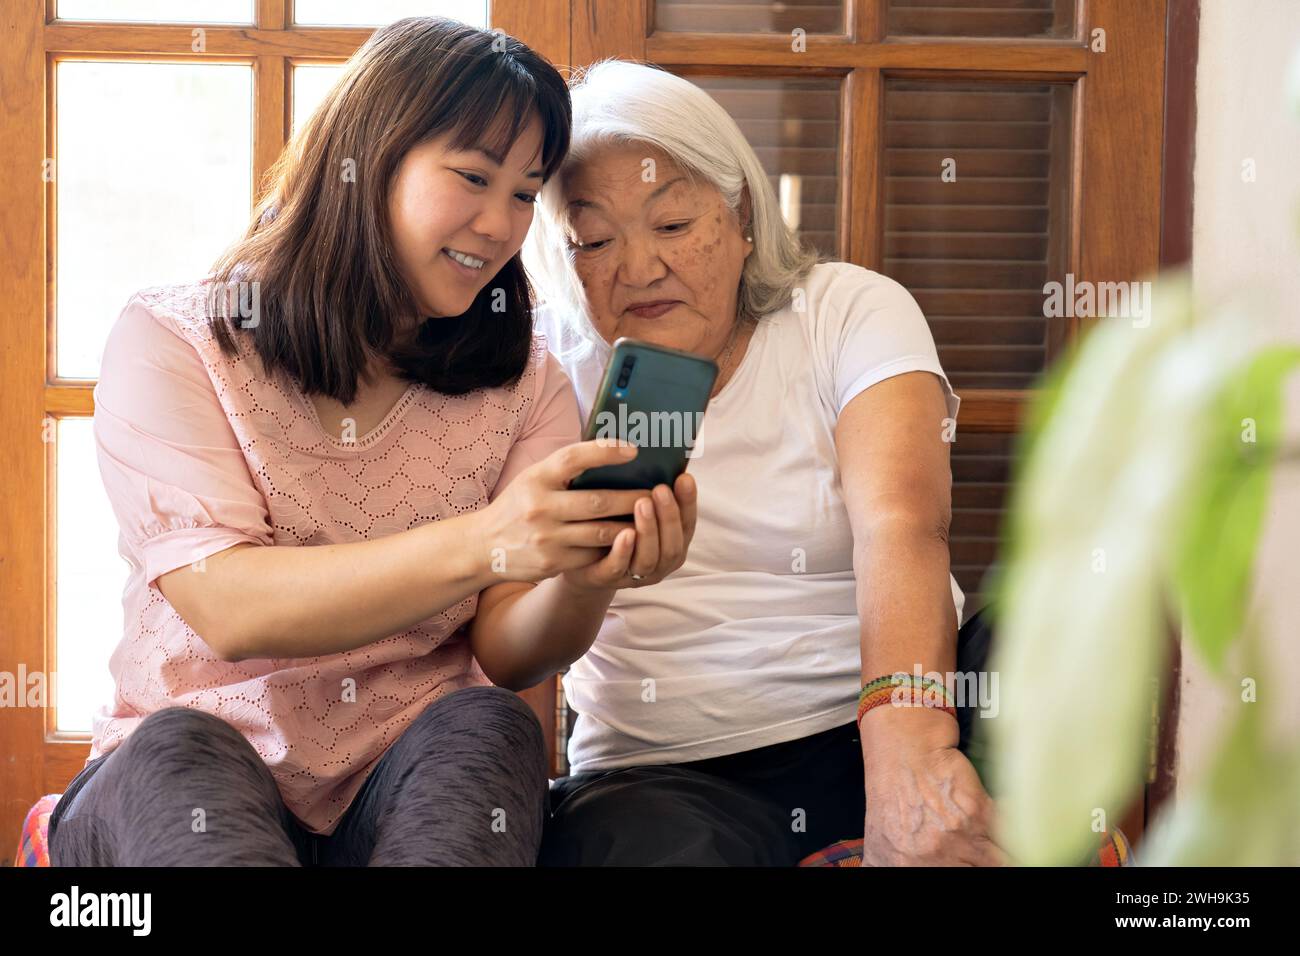 Japanische Erwachsene Tochter teilt Fotos, die mit ihrem Smartphone aufgenommen wurden, mit ihrer älteren Mutter. Stockfoto